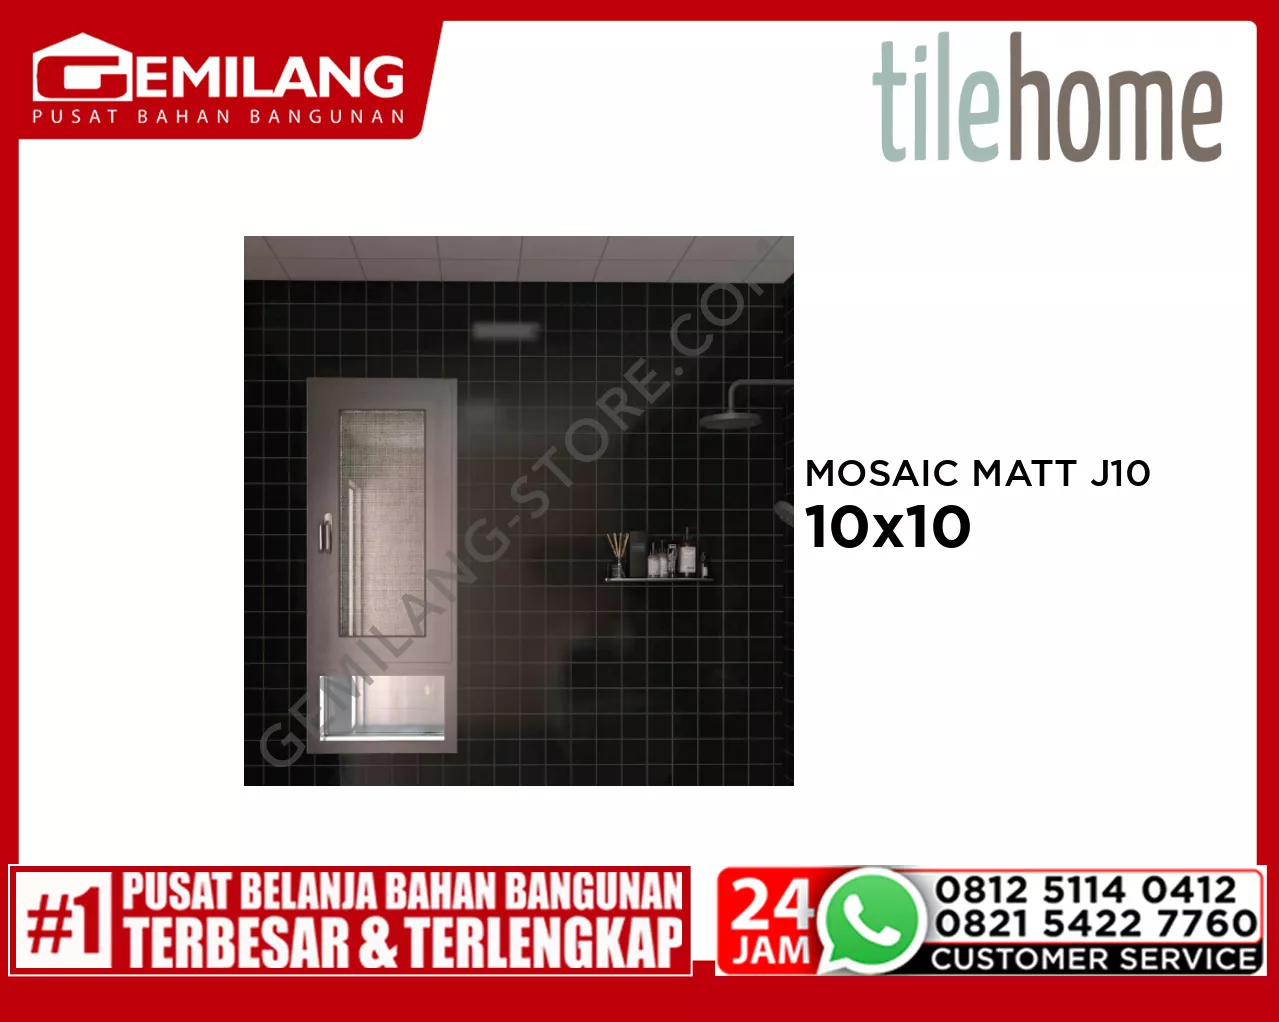 TILEHOME MOSAIC MATT J10 W108M 10cm x 10cm